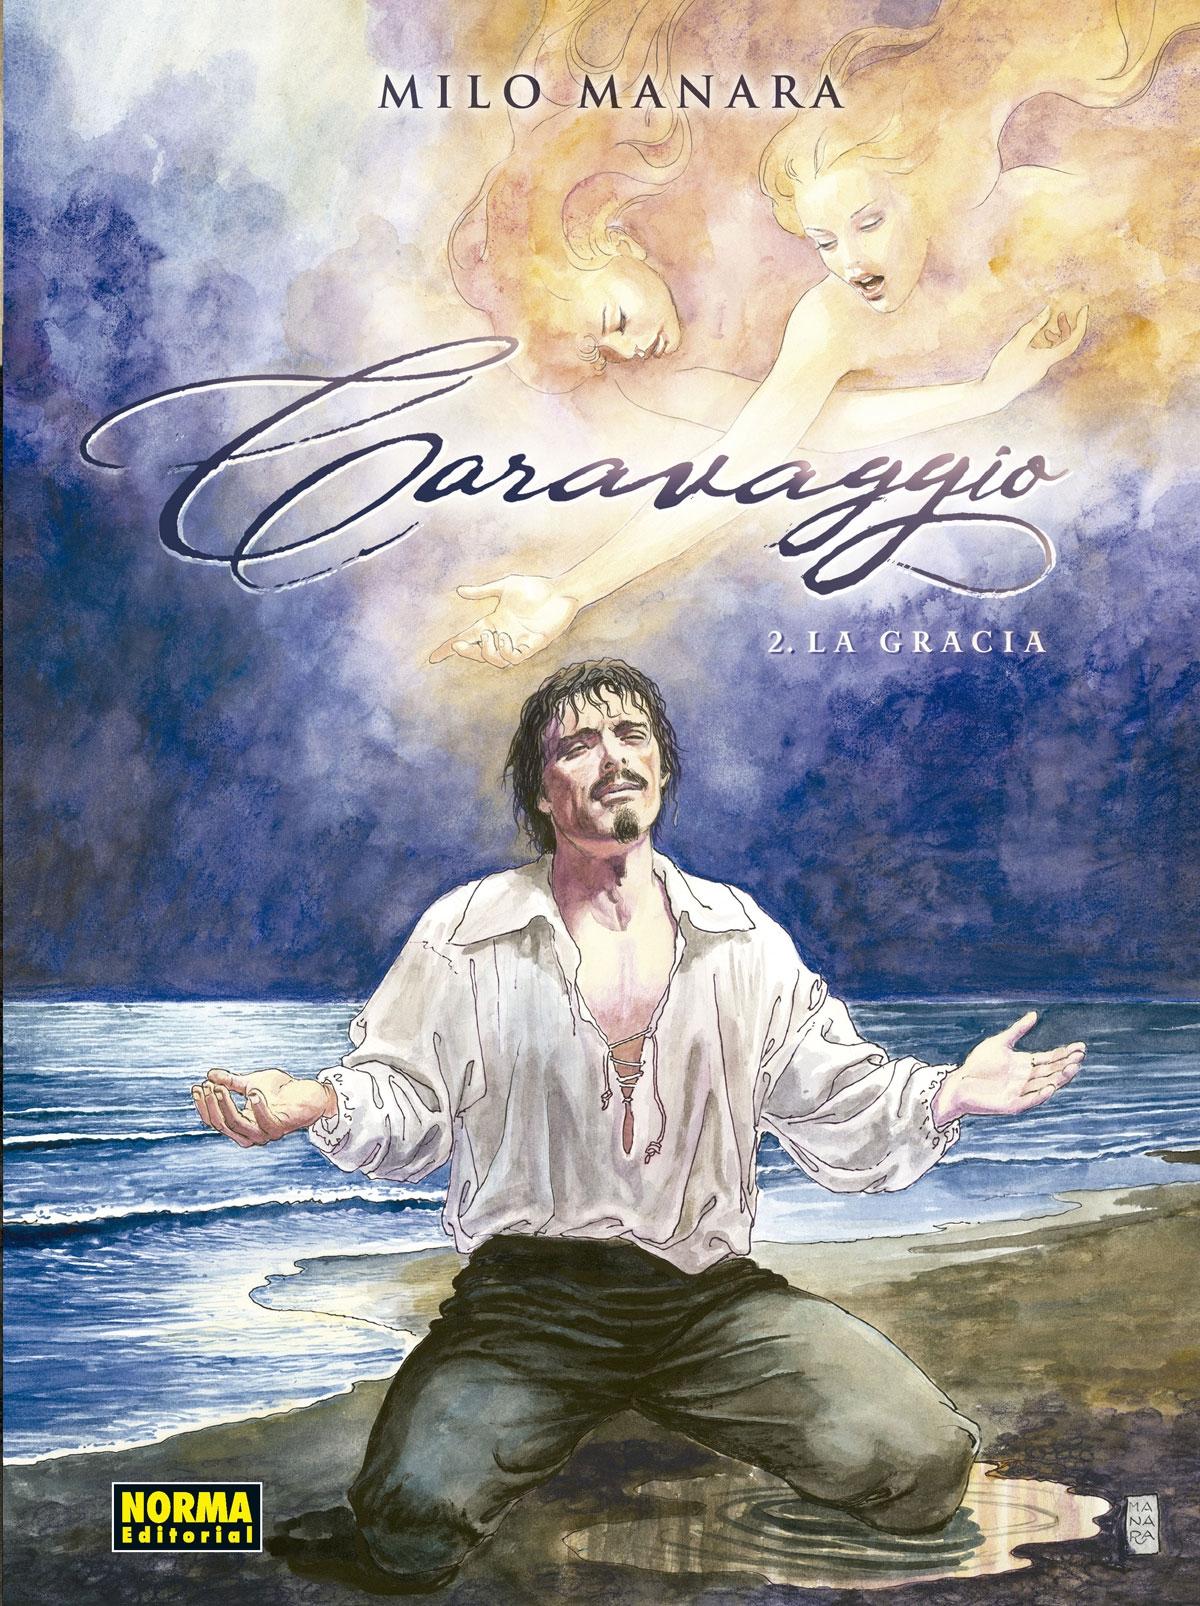 Caravaggio 2 "La Gracia". 